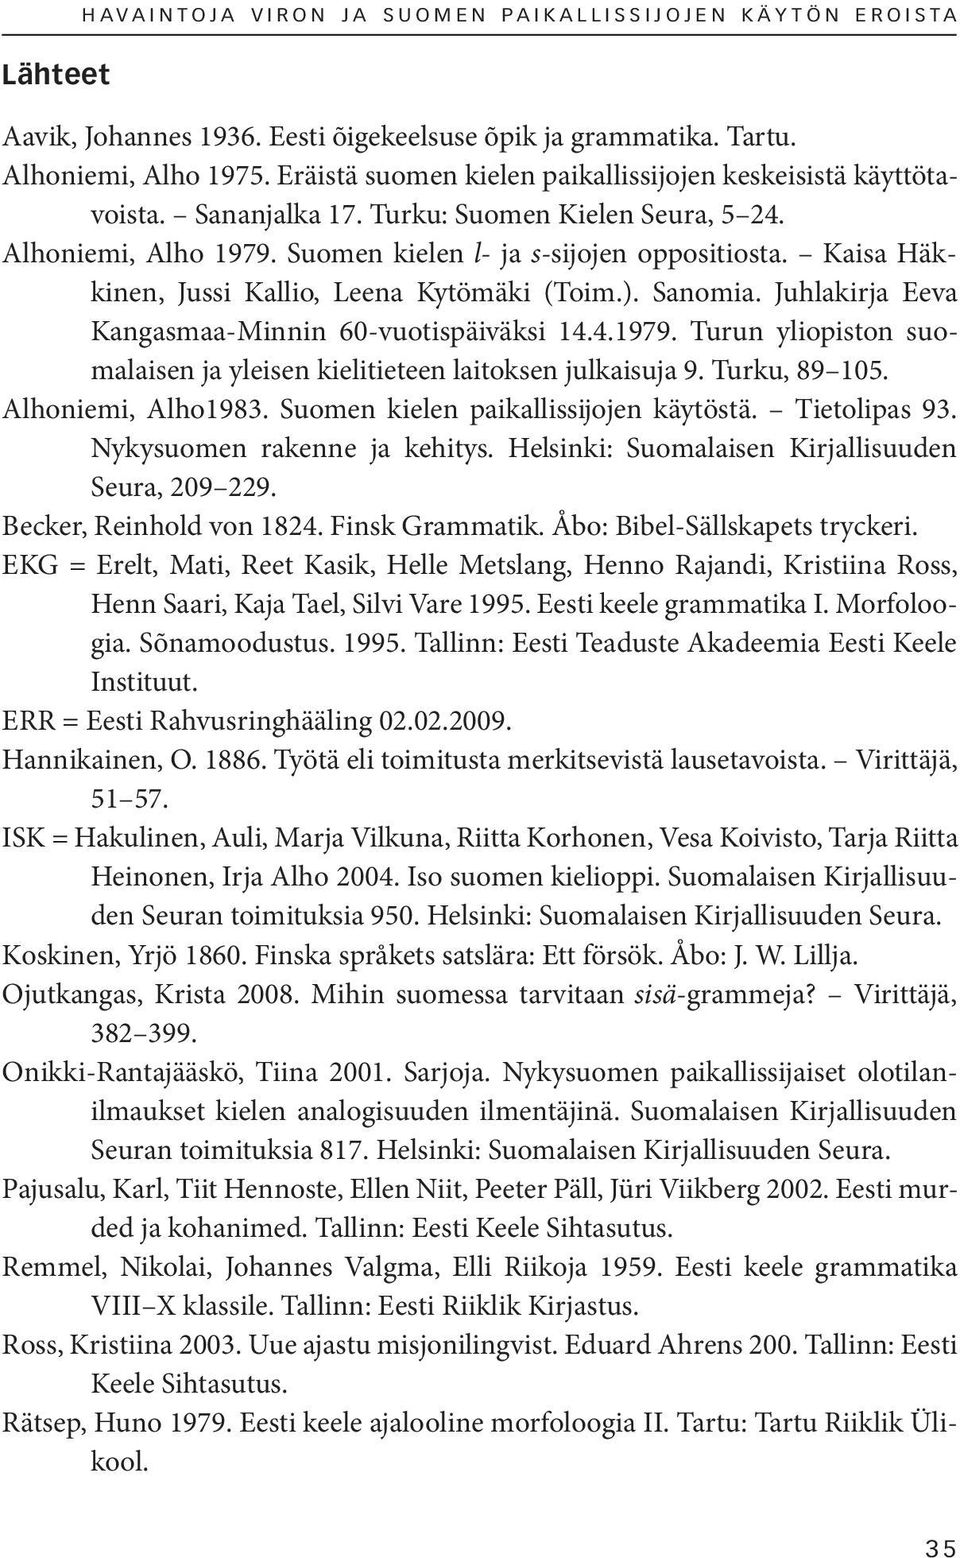 Kaisa Häkkinen, Jussi Kallio, Leena Kytömäki (Toim.). Sanomia. Juhlakirja Eeva Kangasmaa-Minnin 60-vuotispäiväksi 14.4.1979.